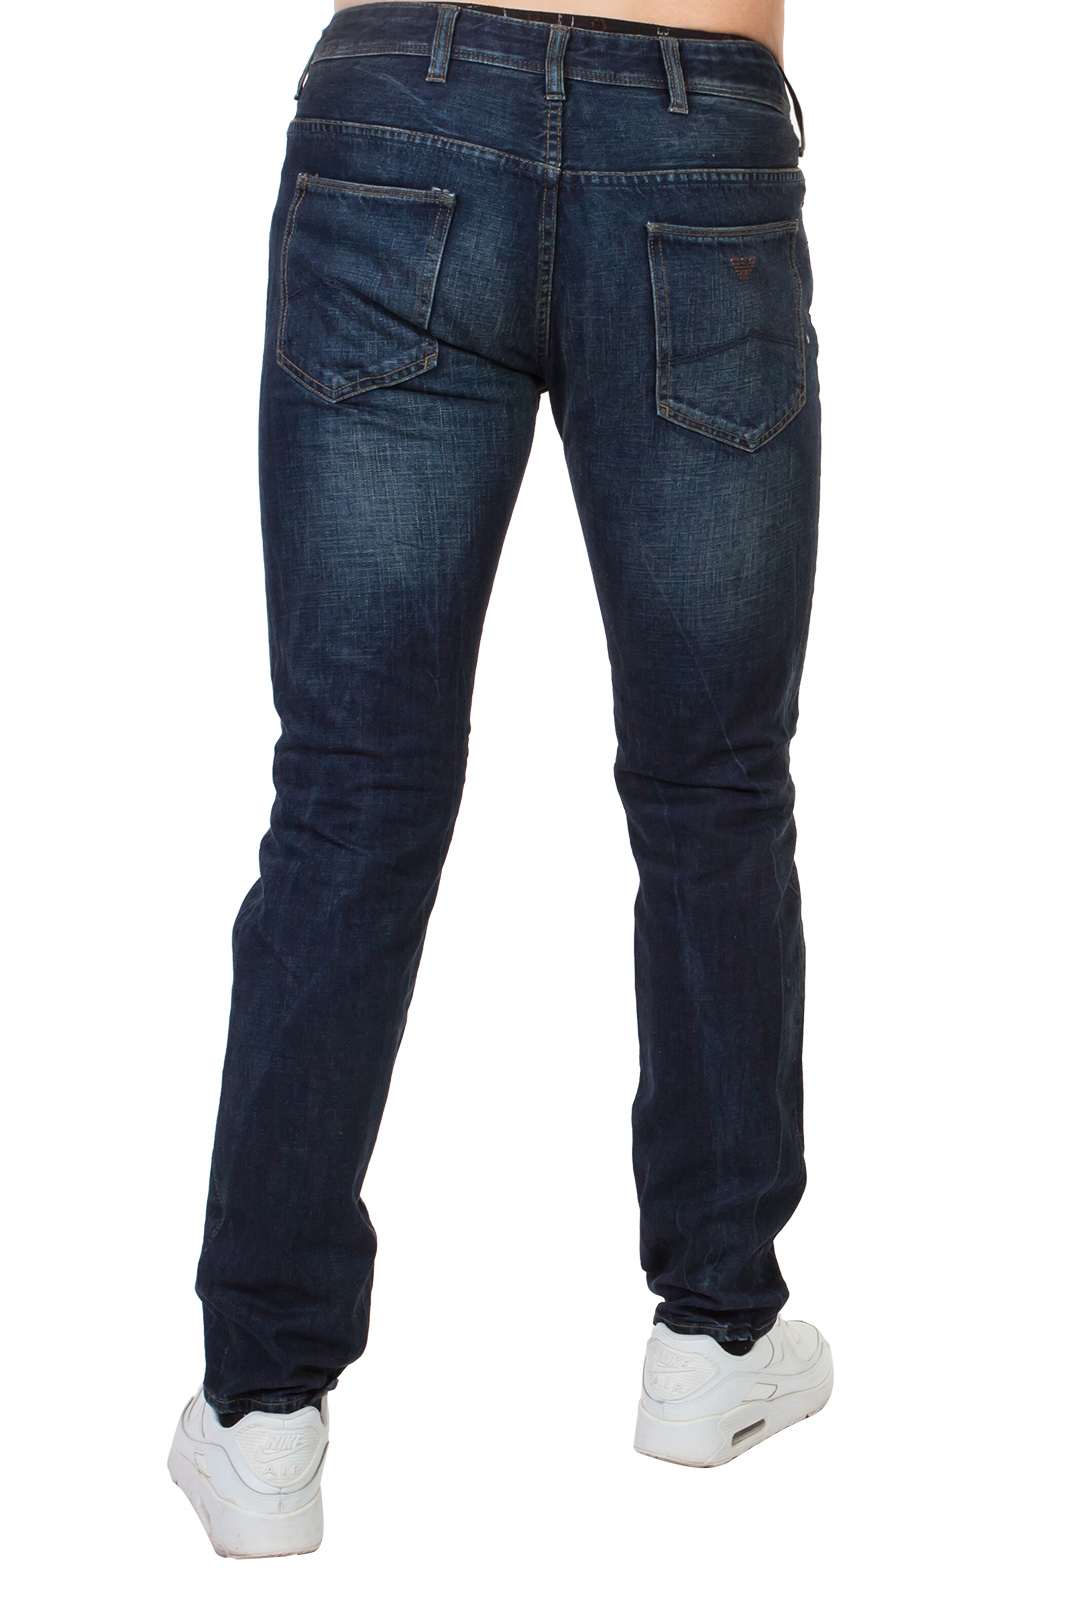 Правильные мужские джинсы из качественного хлопка